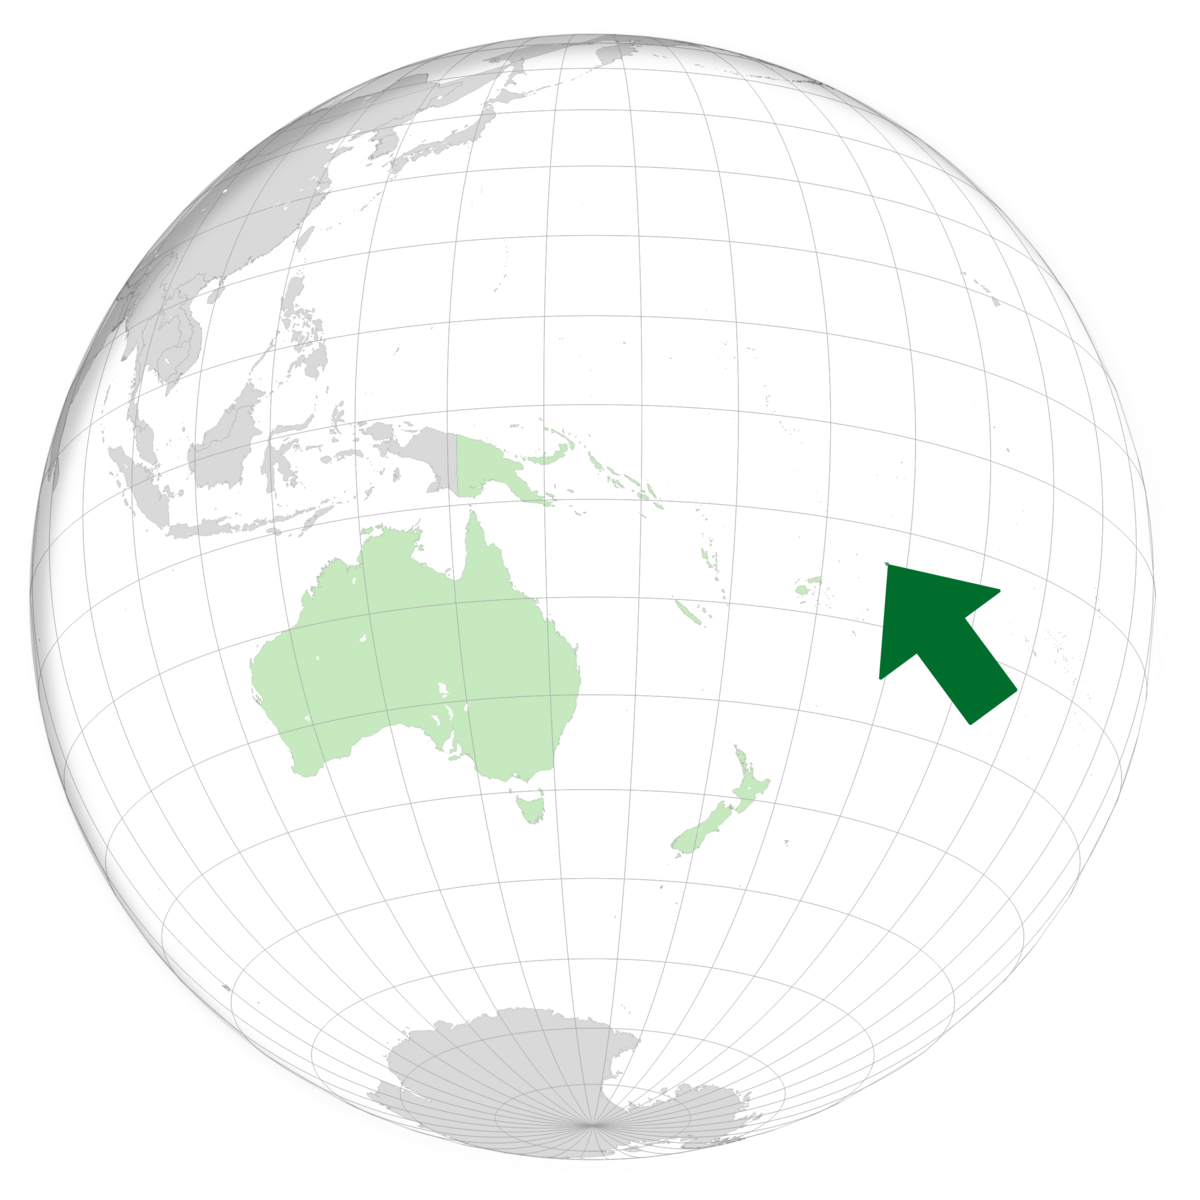 plassering av Samoa på jordkloden. Kart